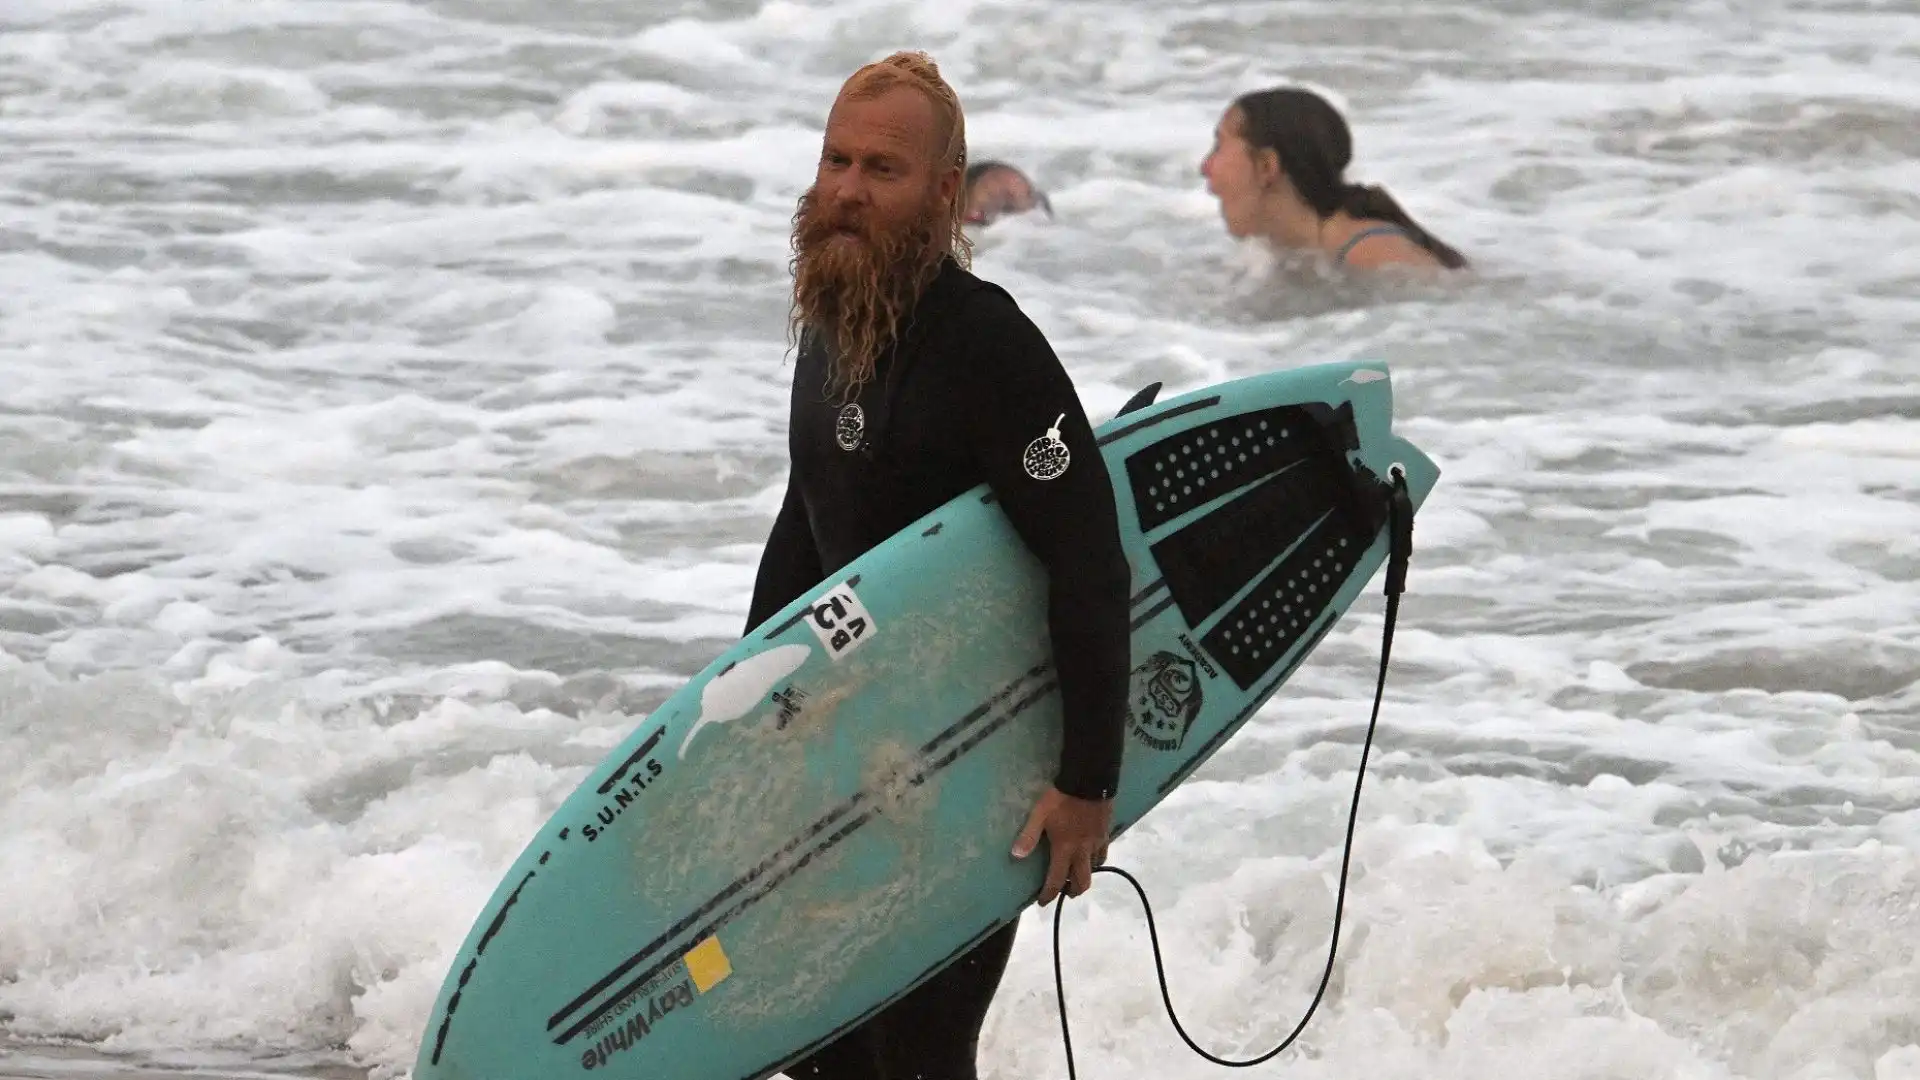 Blake Johnston ha fissato a marzo il nuovo primato mondiale di surf session più lunga